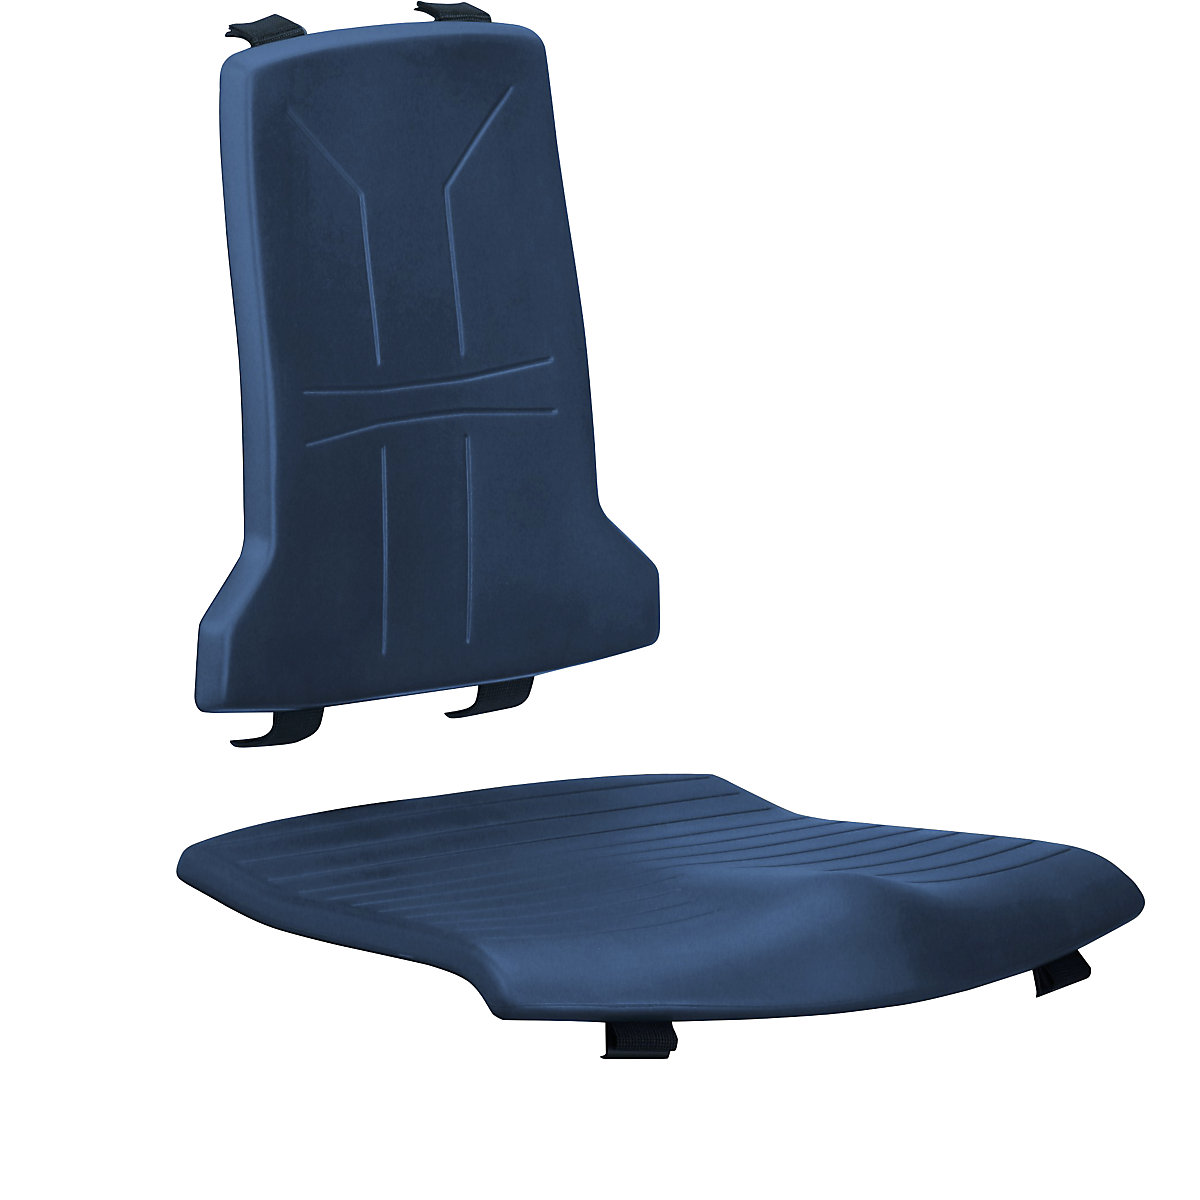 Polster bimos, Standard-Ausführung, je 1 Polster für Sitz und Rückenlehne, PU-Schaum-Polster, blau-1